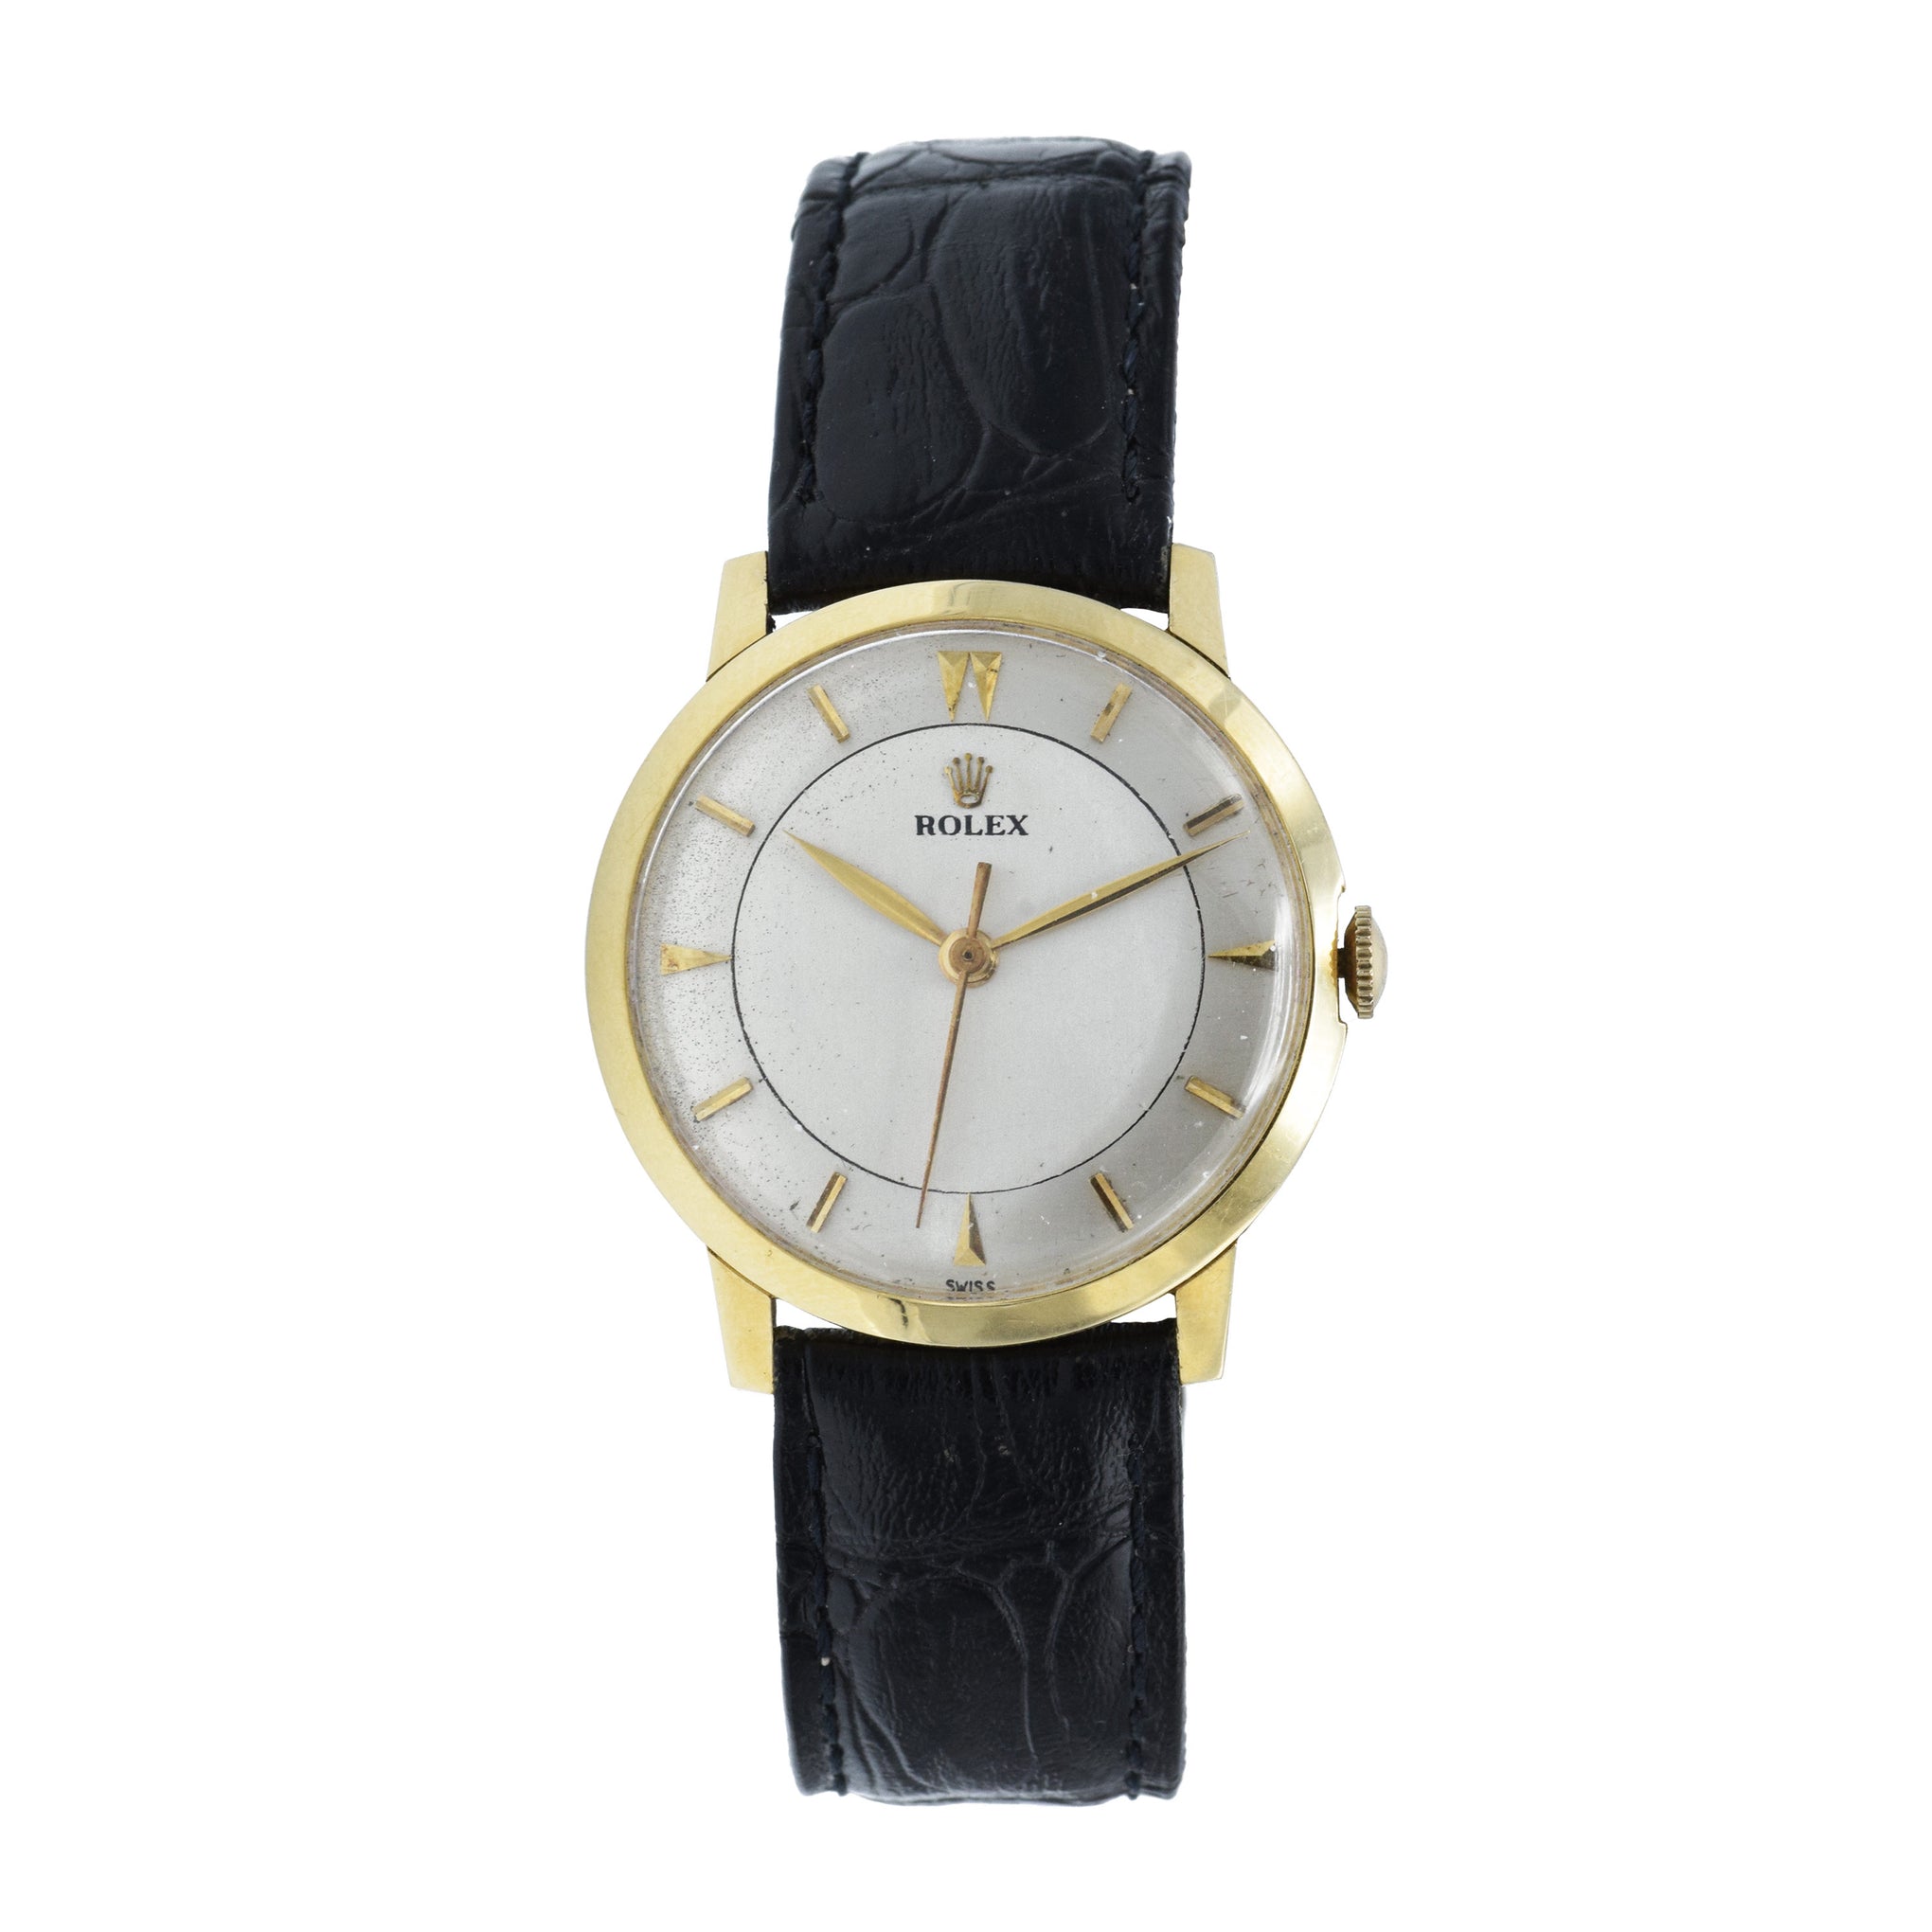 Vintage 1938 Rolex Watch